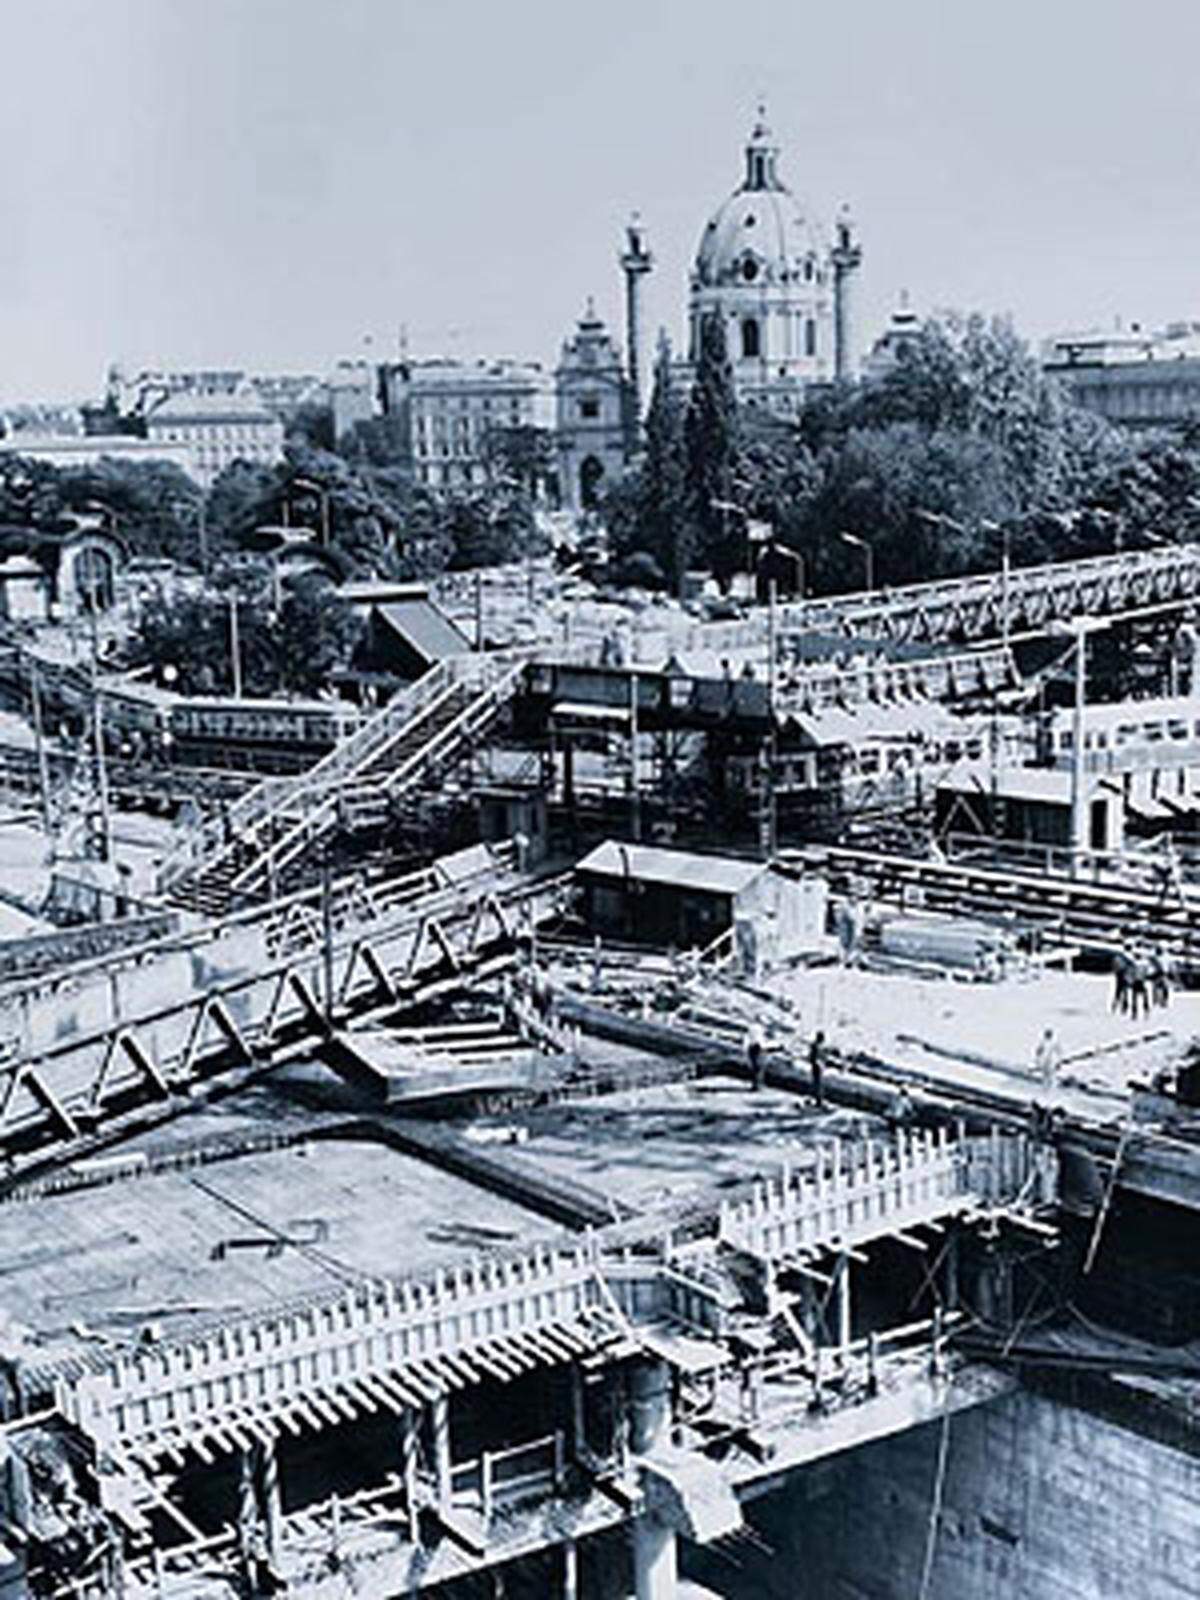 Seit 40 Jahren wird in Wien am U-Bahnnetz gebaut. Am 3. November 1969 erfolgte der Baubeginn der Linie U1 am Karlsplatz. Seitdem wurden für das U-Bahnnetz der fünf Linien, die auf 69,5 Kilometern 95 Stationen anfahren, sechs Millionen Kubikmeter Erdreich bewegt. Zudem wurden 300.000 Tonnen Stahl sowie 2,7 Millionen Kubikmeter Beton verarbeitet.